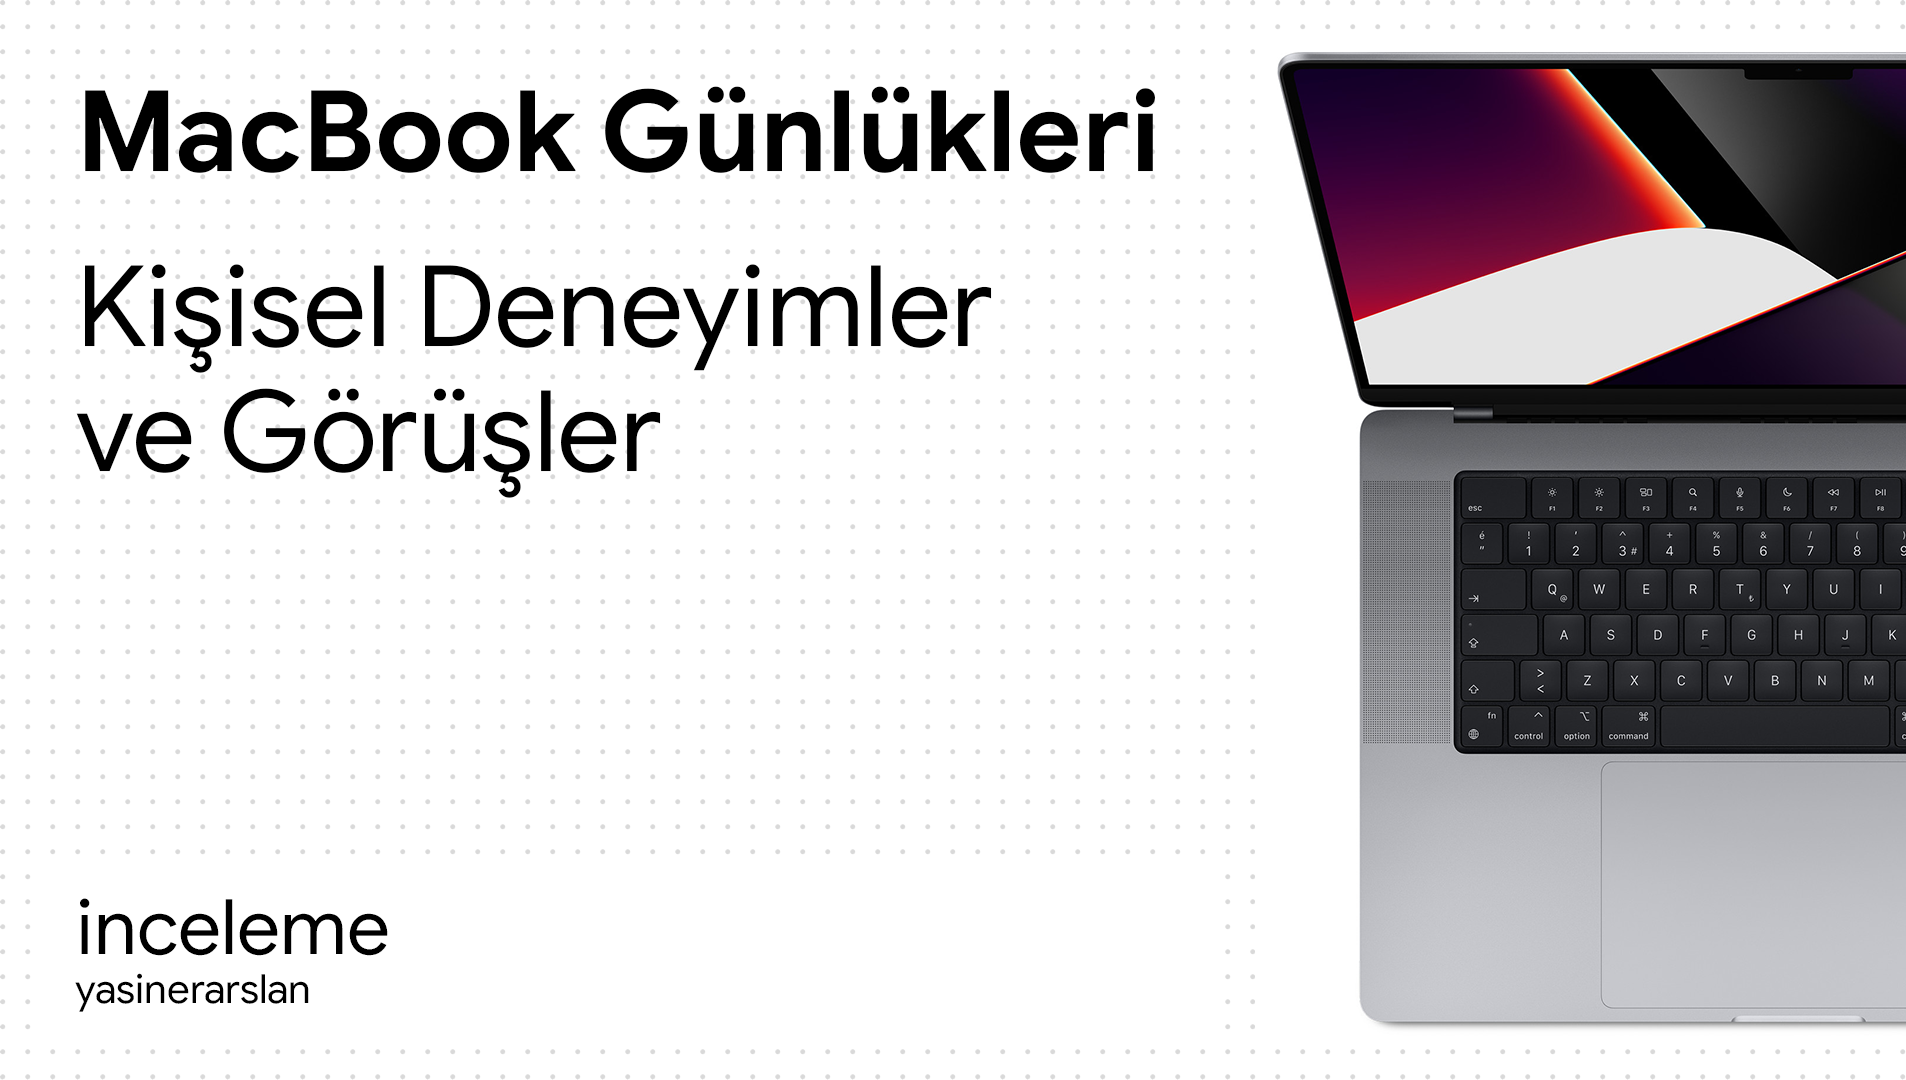 macbook_gunlukleri_kisisel_deneyimler_ve_gorusler_cover